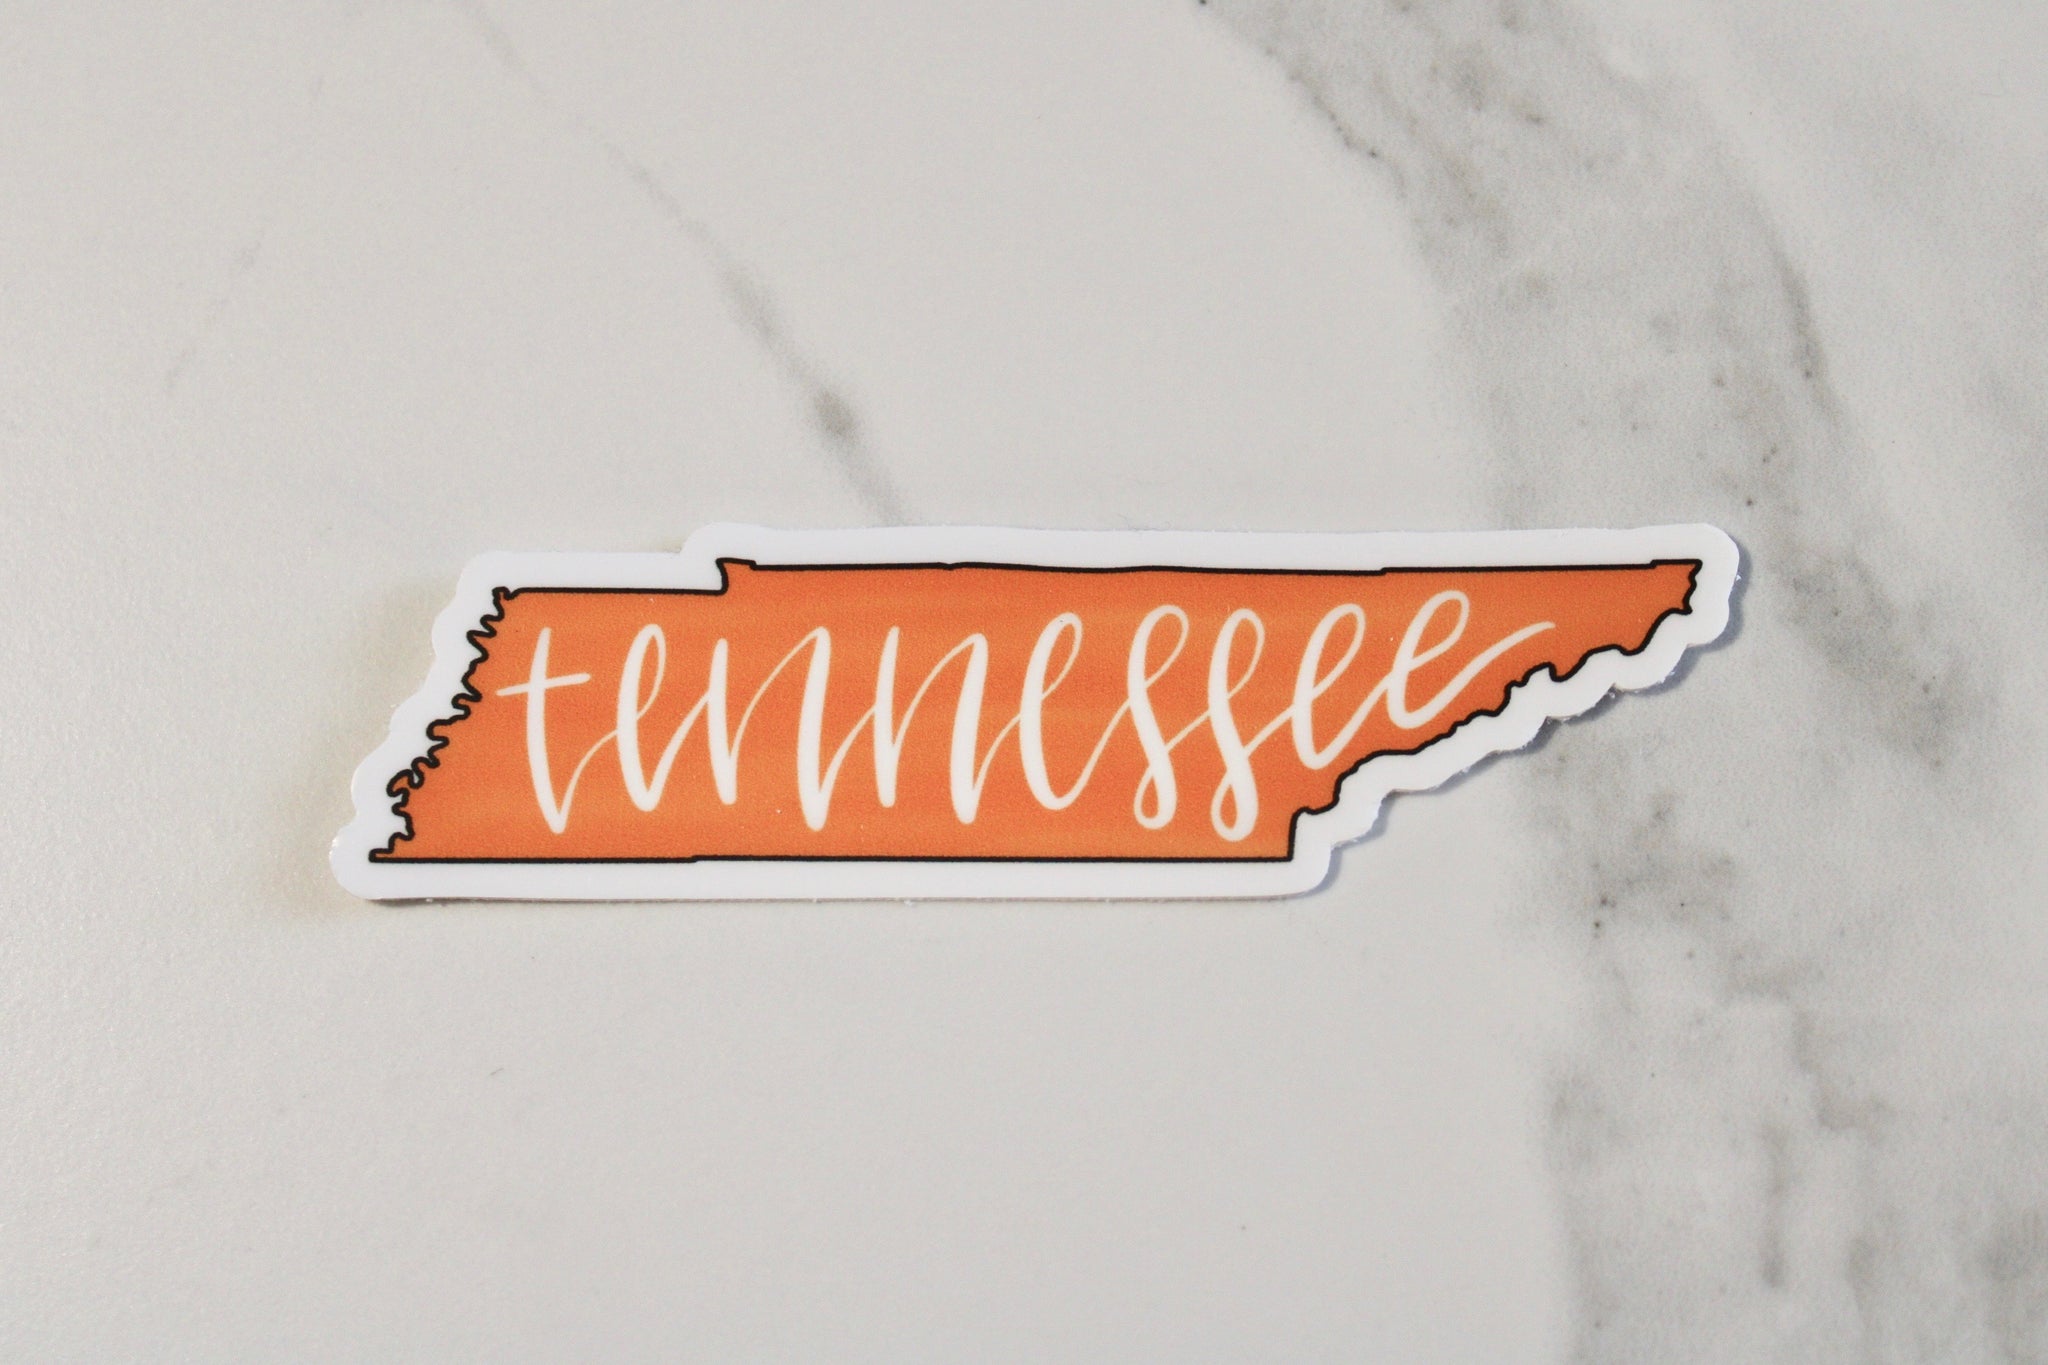 Orange Hand-Lettered "Tennessee" Sticker